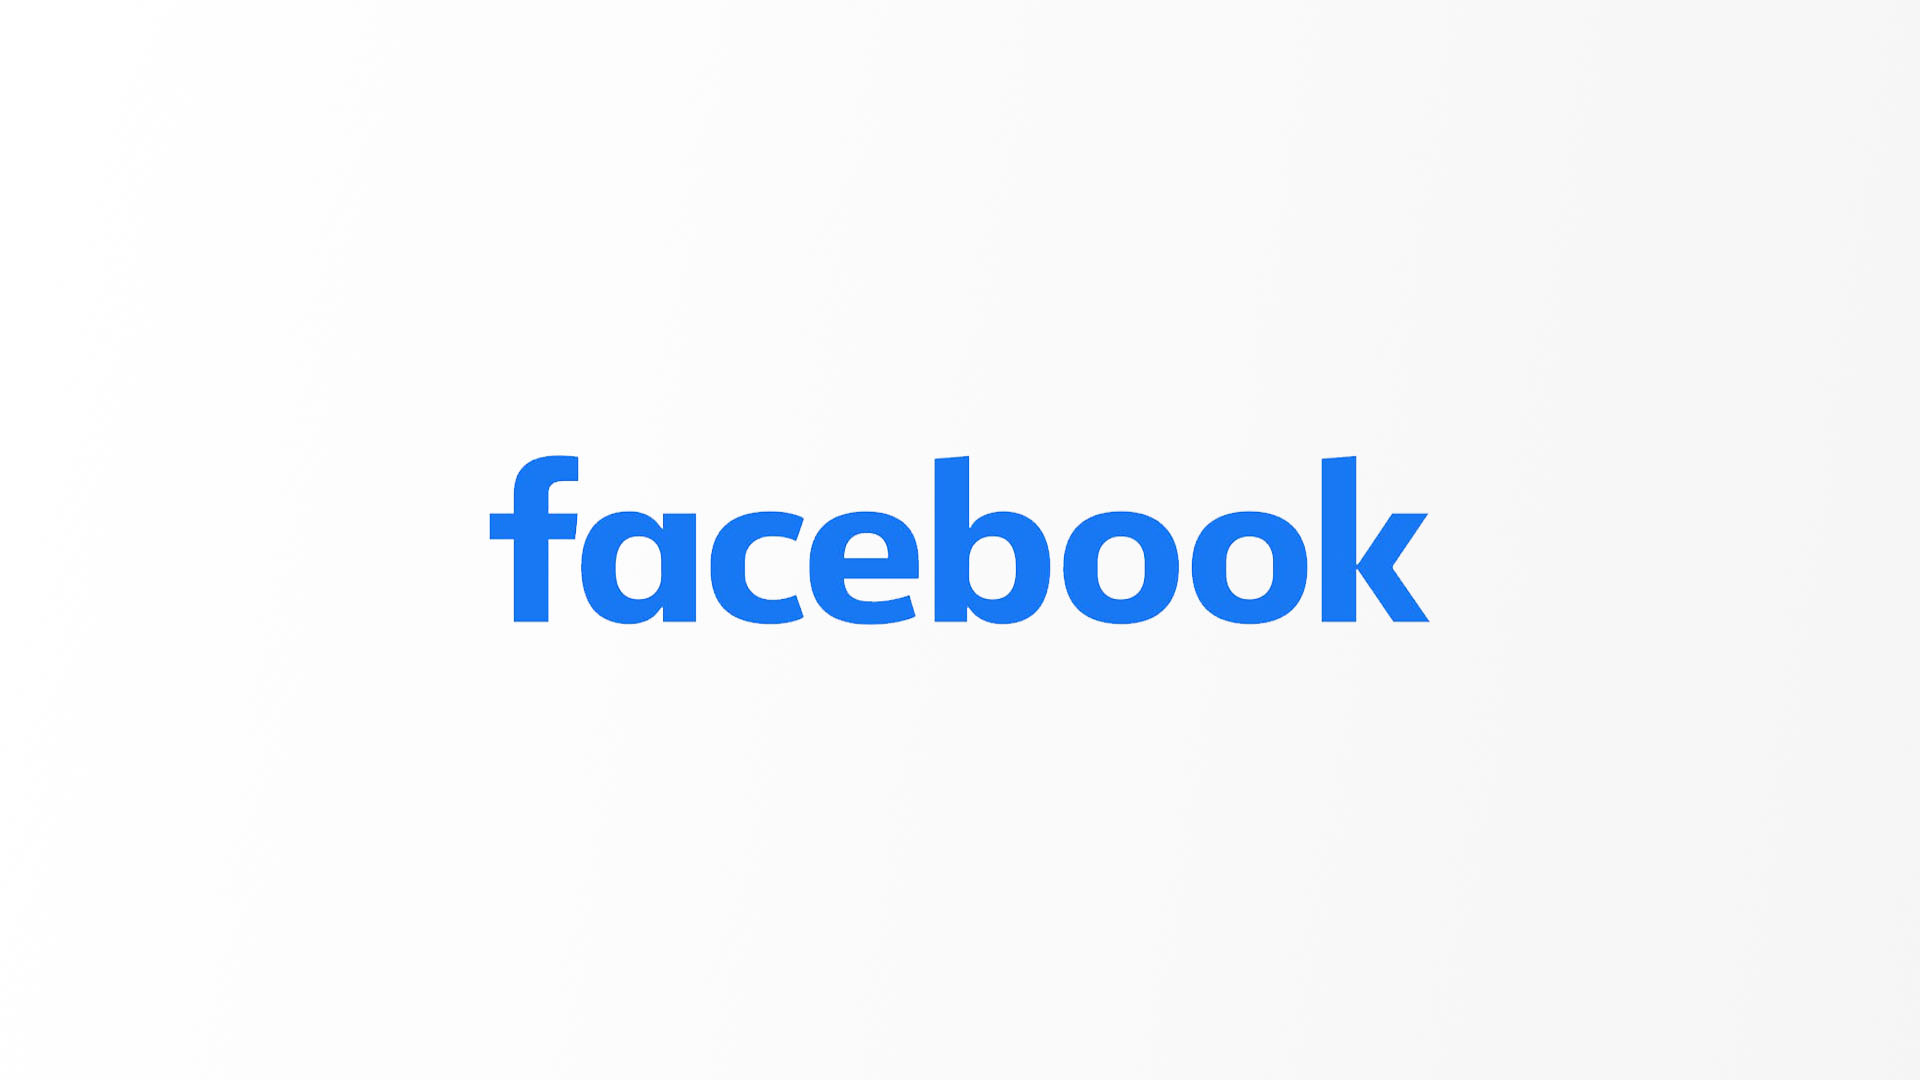 Facebook fiók, profil felfüggesztése, szüneteltetése